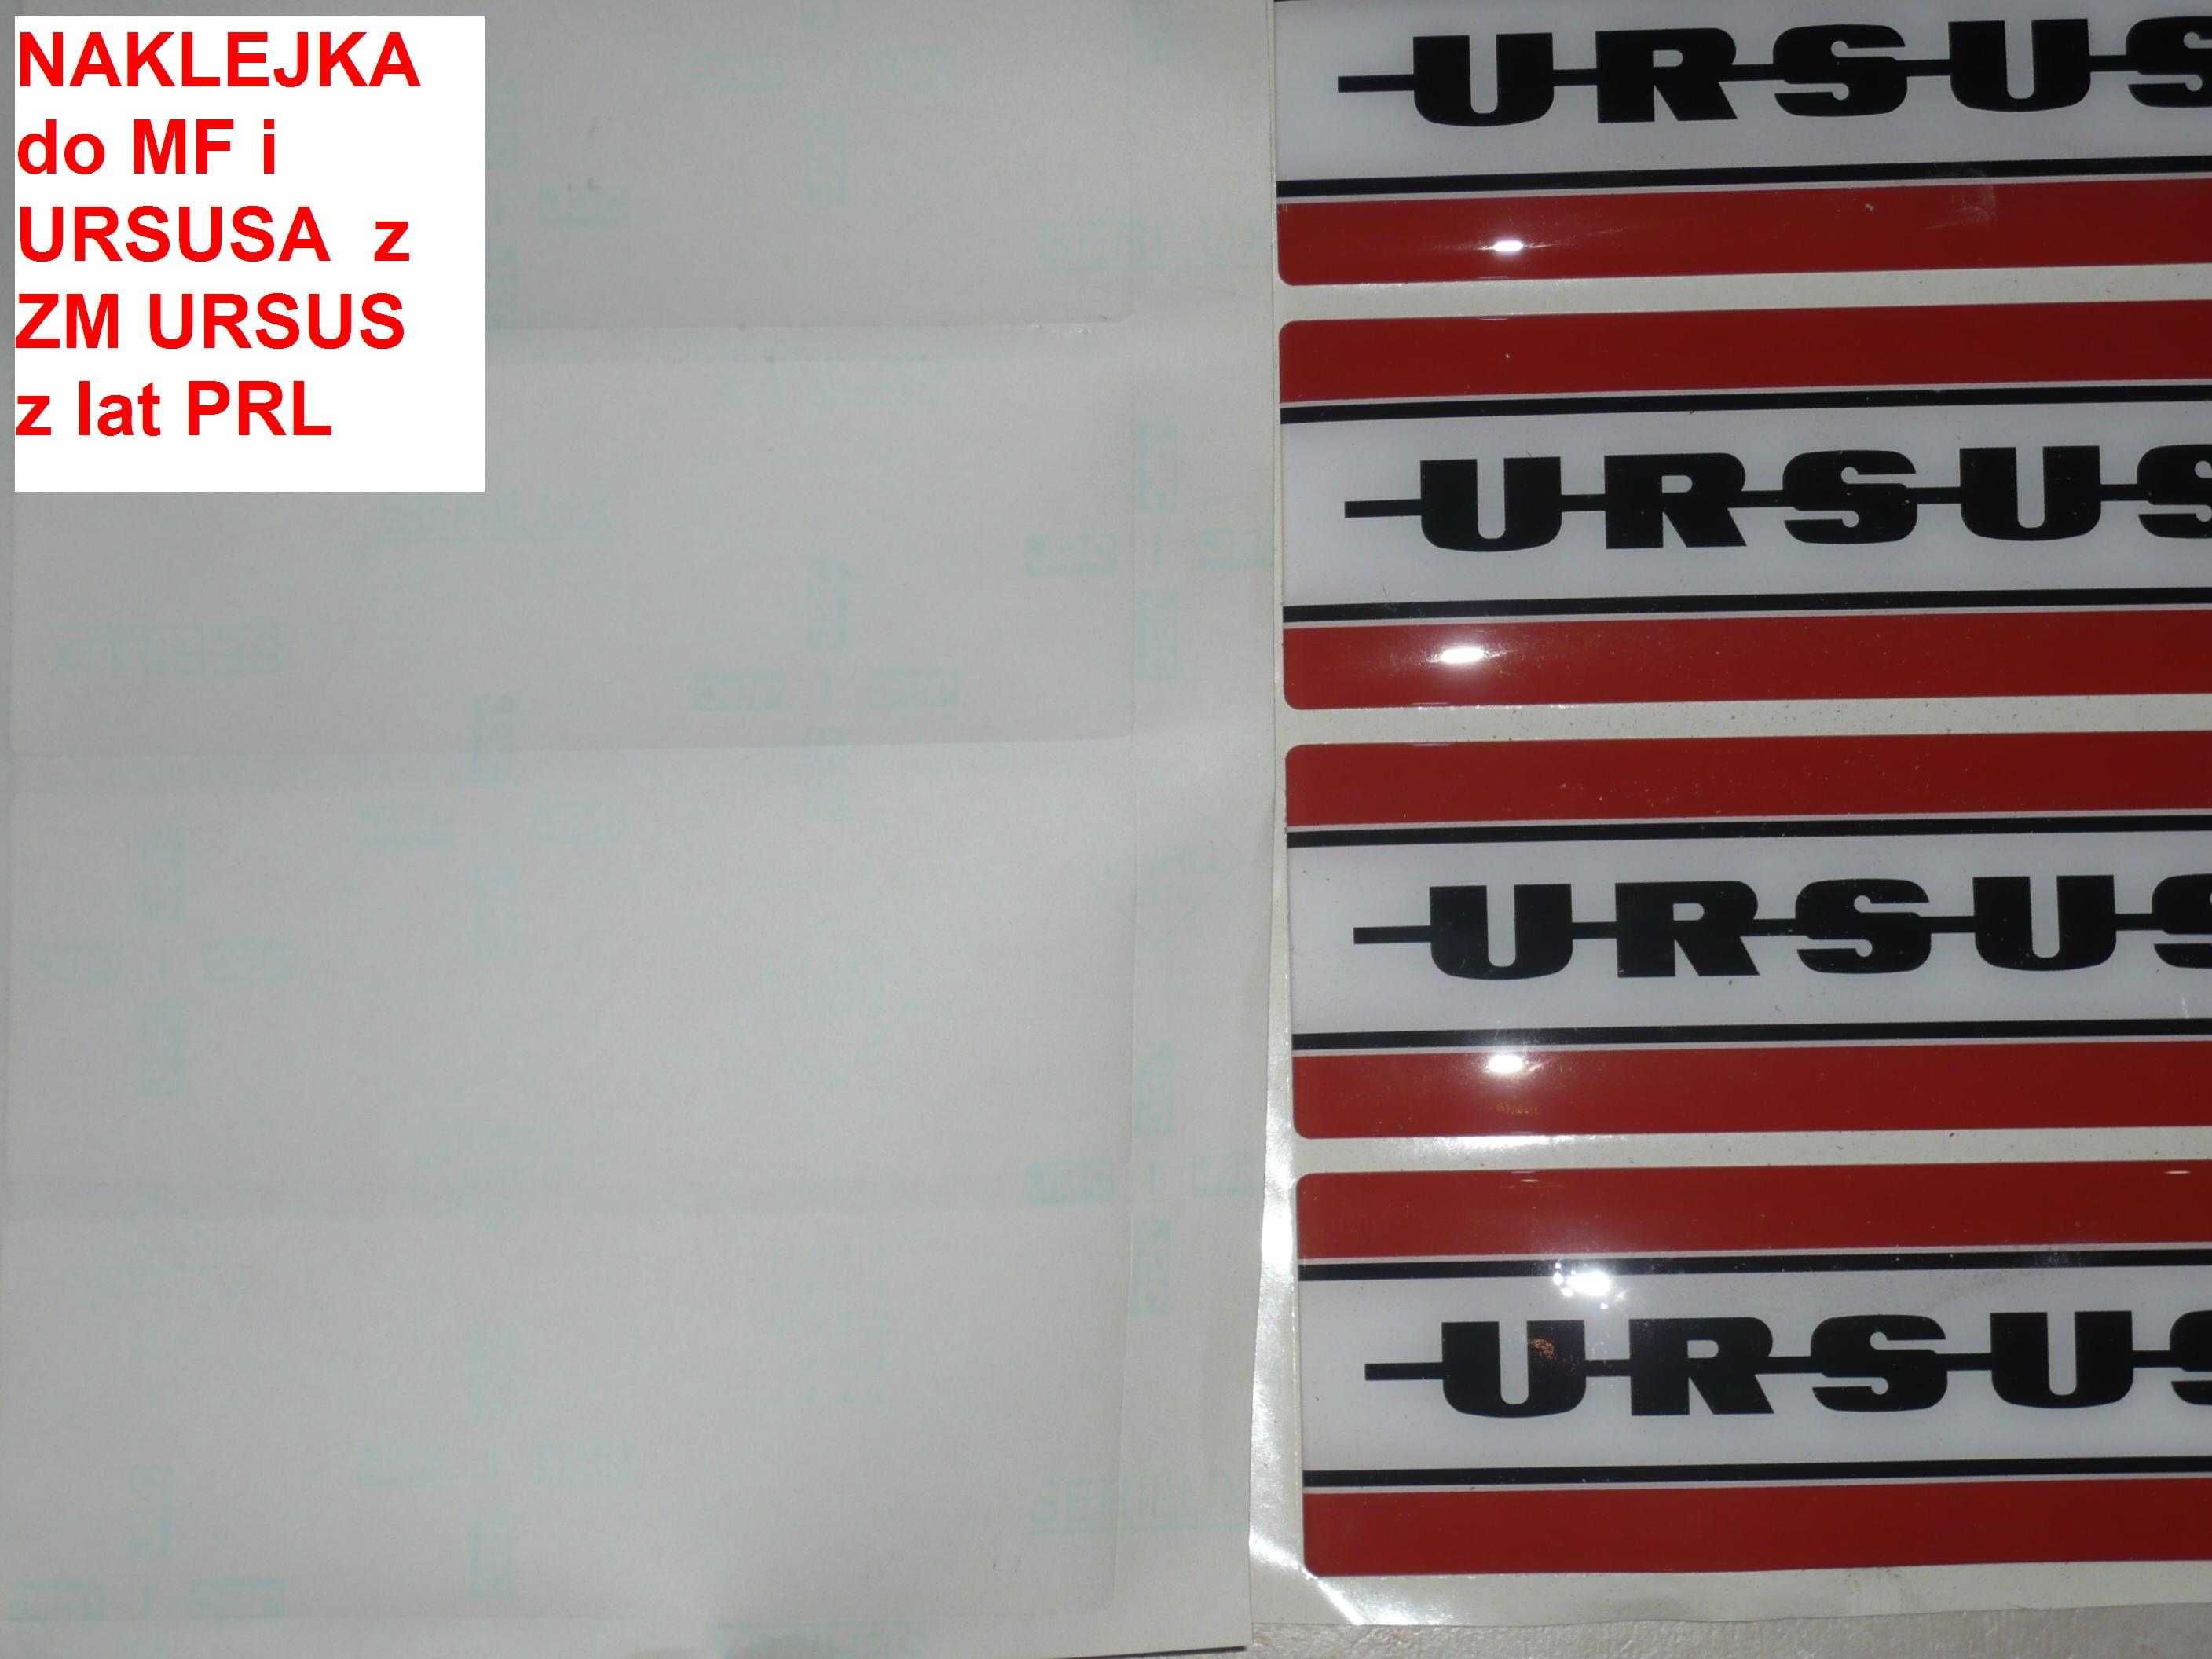 Naklejka żelowa URSUS 170mmx60mm PRL oryginał zabytek